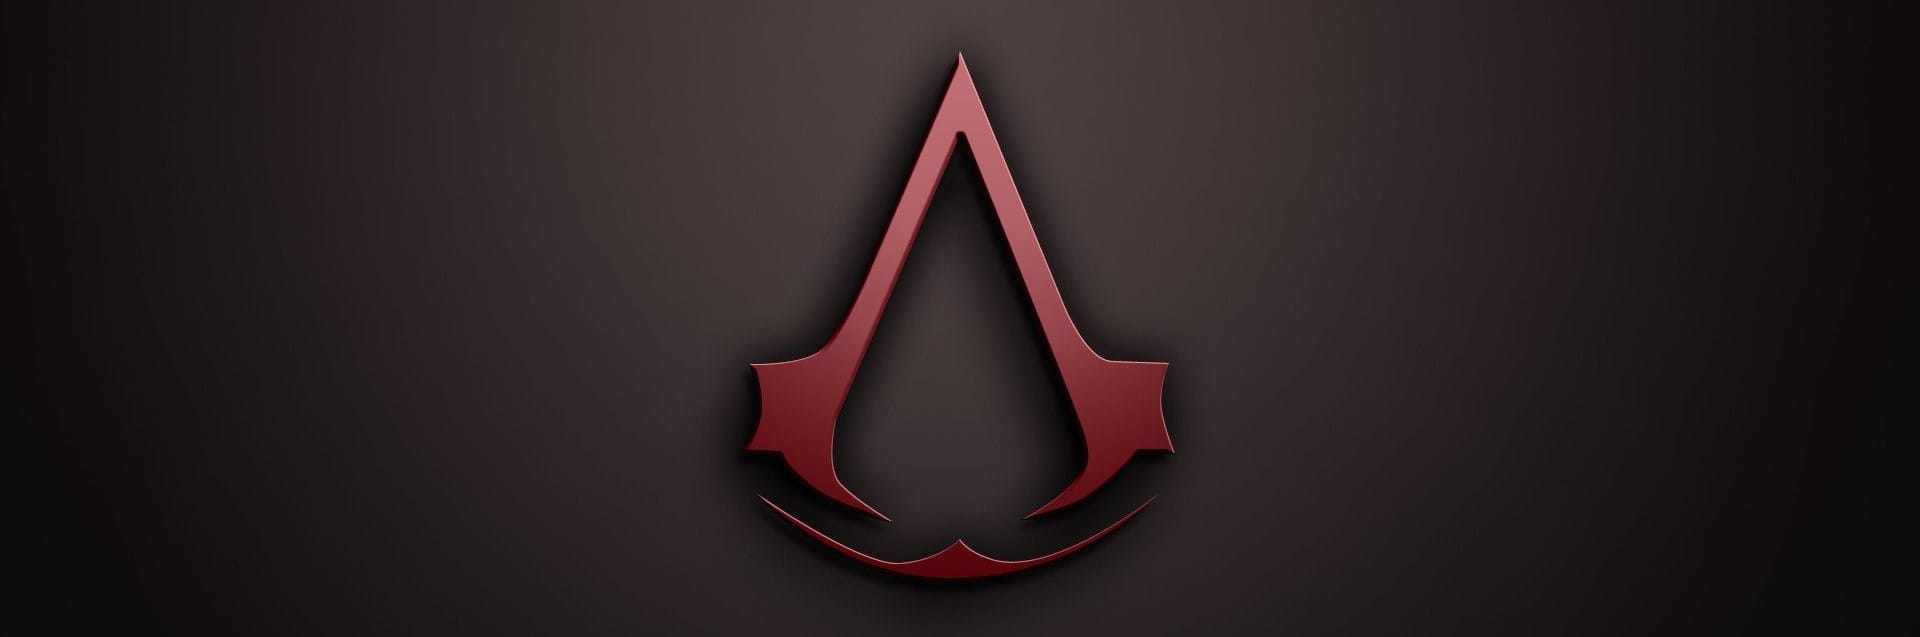 إشاعة : الجزء القادم من Assassin's Creed سيصدر في 2022